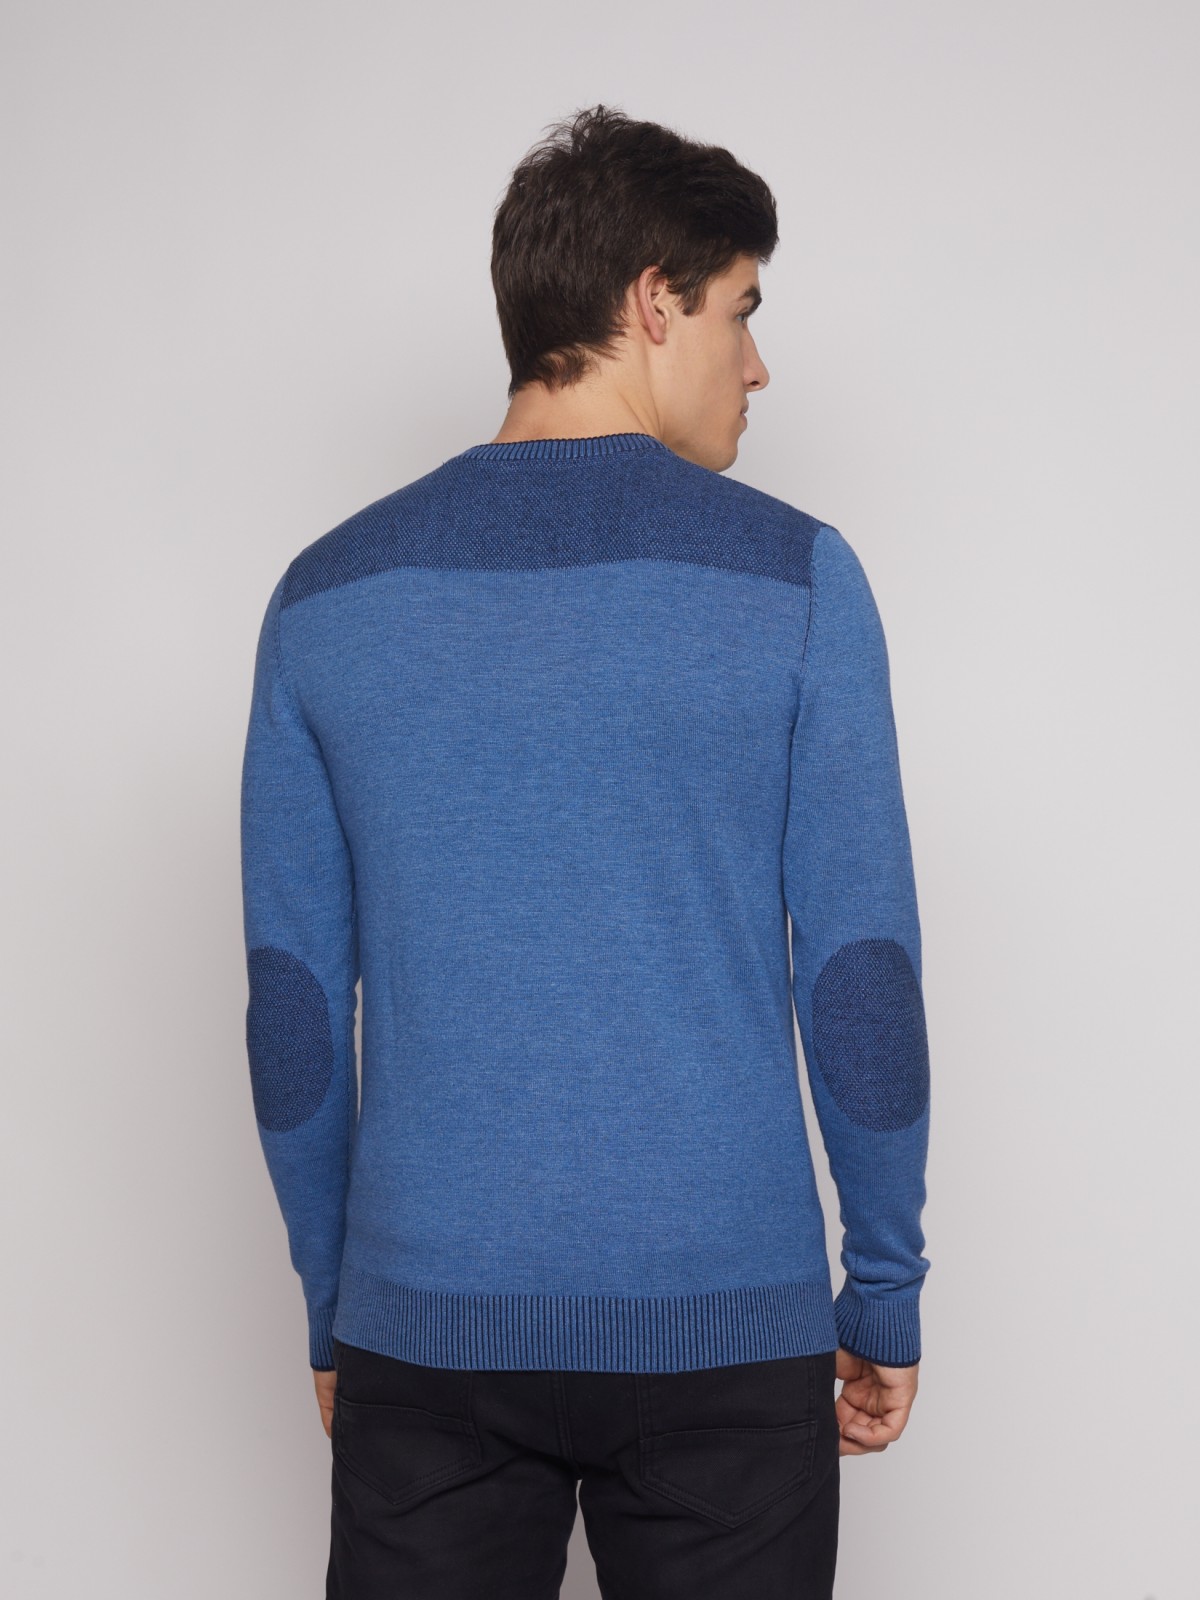 Тонкий вязаный пуловер zolla 012426183043, цвет голубой, размер M - фото 6